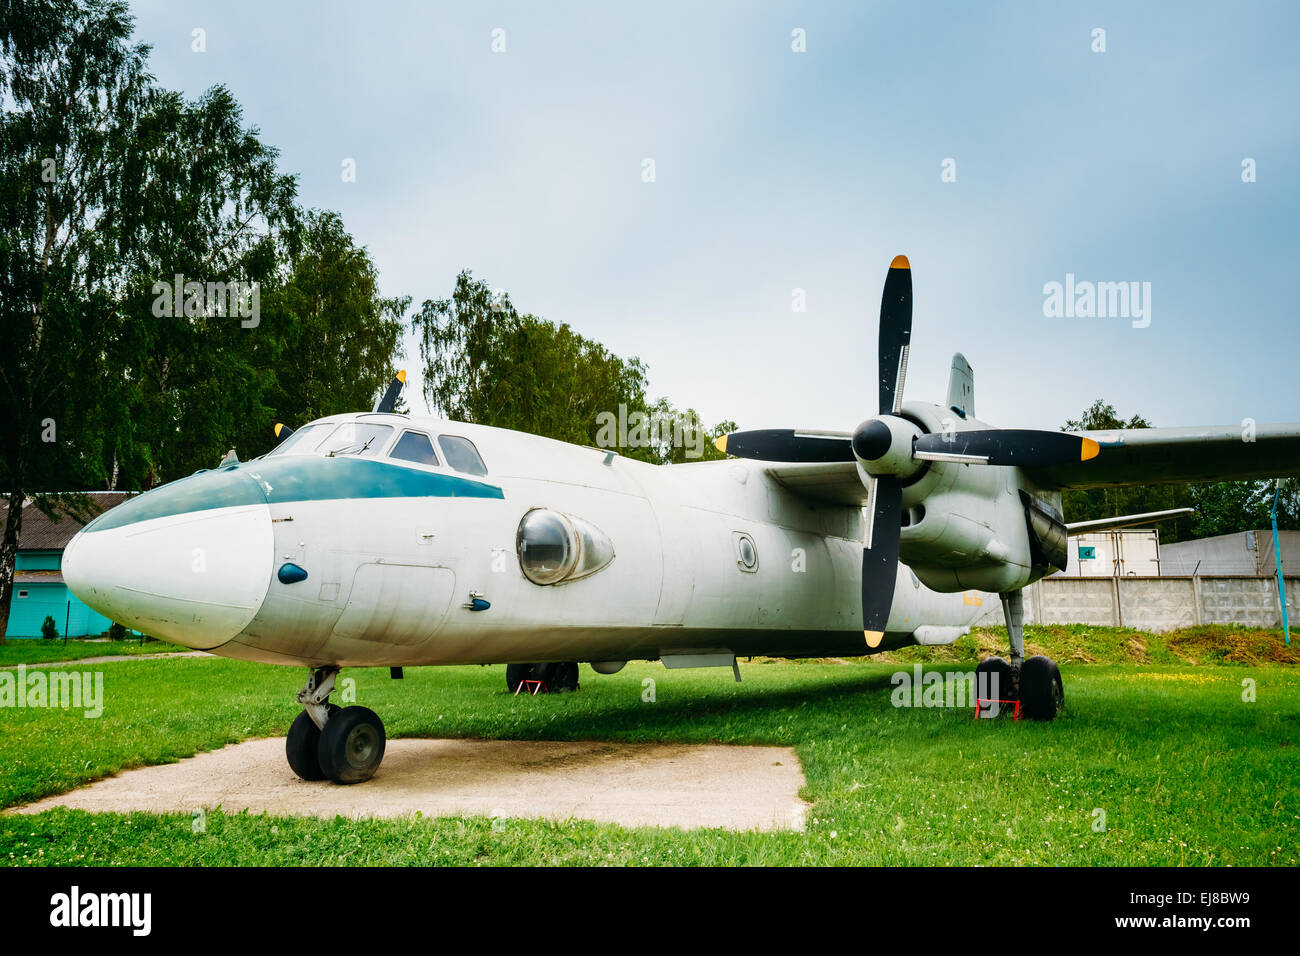 BOROVOE, Bielorussia - Giugno 04, 2014: Russo aeromobili cargo aereo un-26. Militare sovietica aerei di trasporto Foto Stock